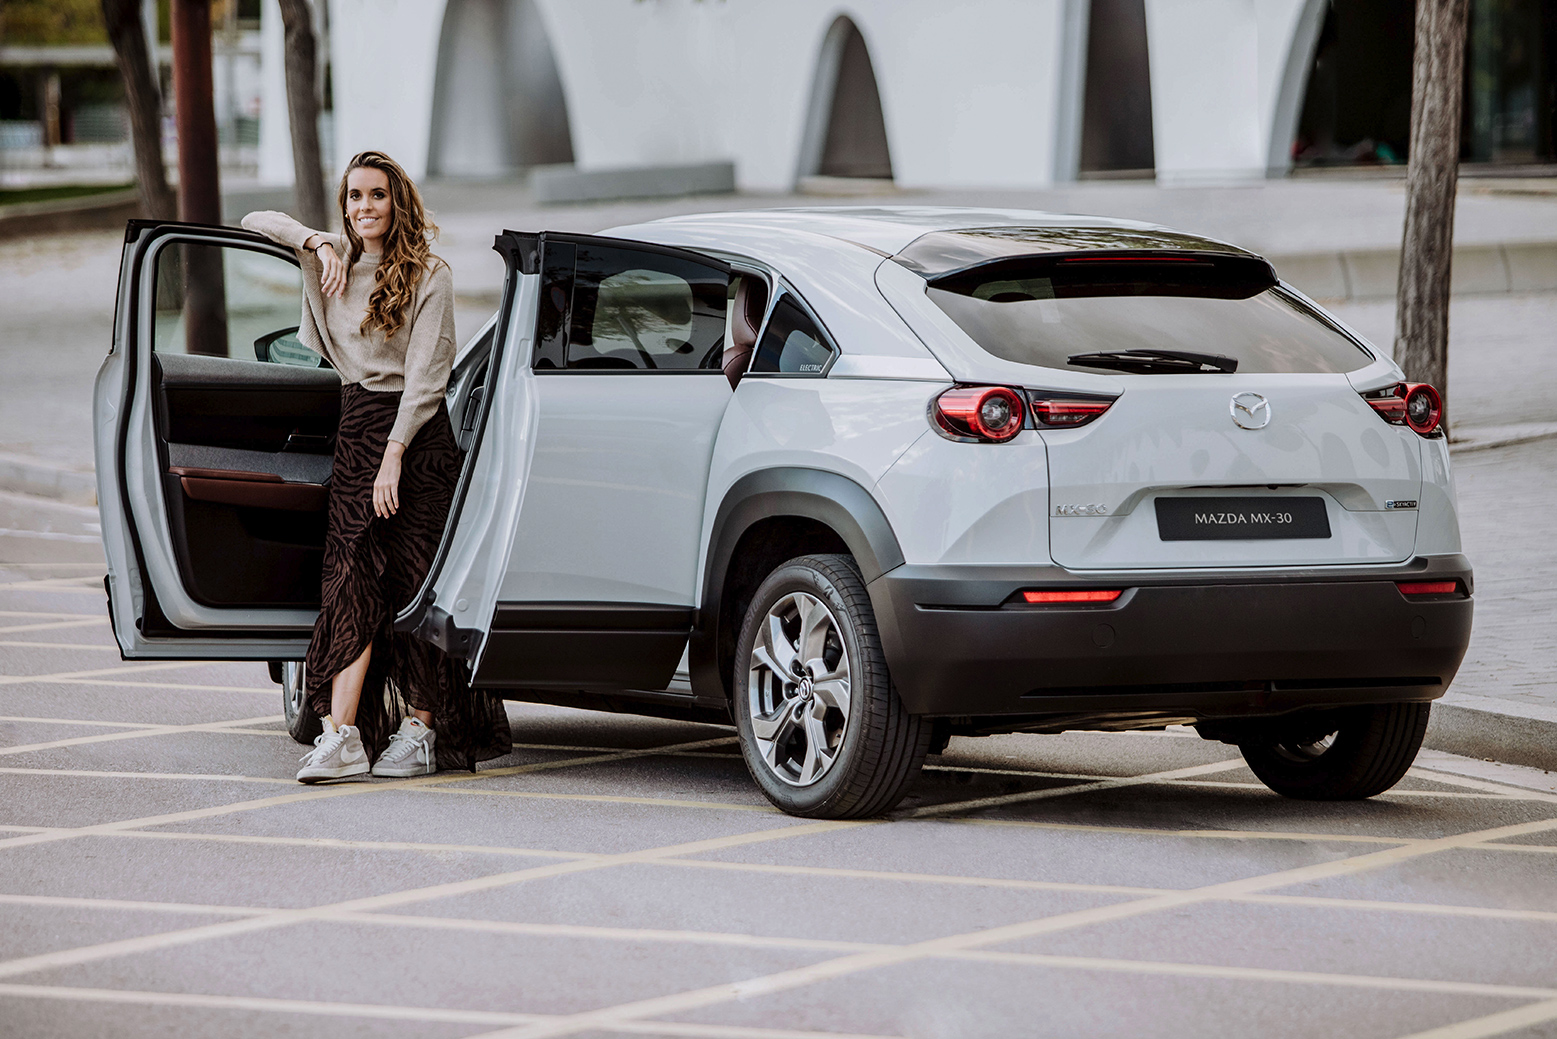 Ona Carbonell posando con el nuevo Mazda MX-30 con sus puertas abiertas